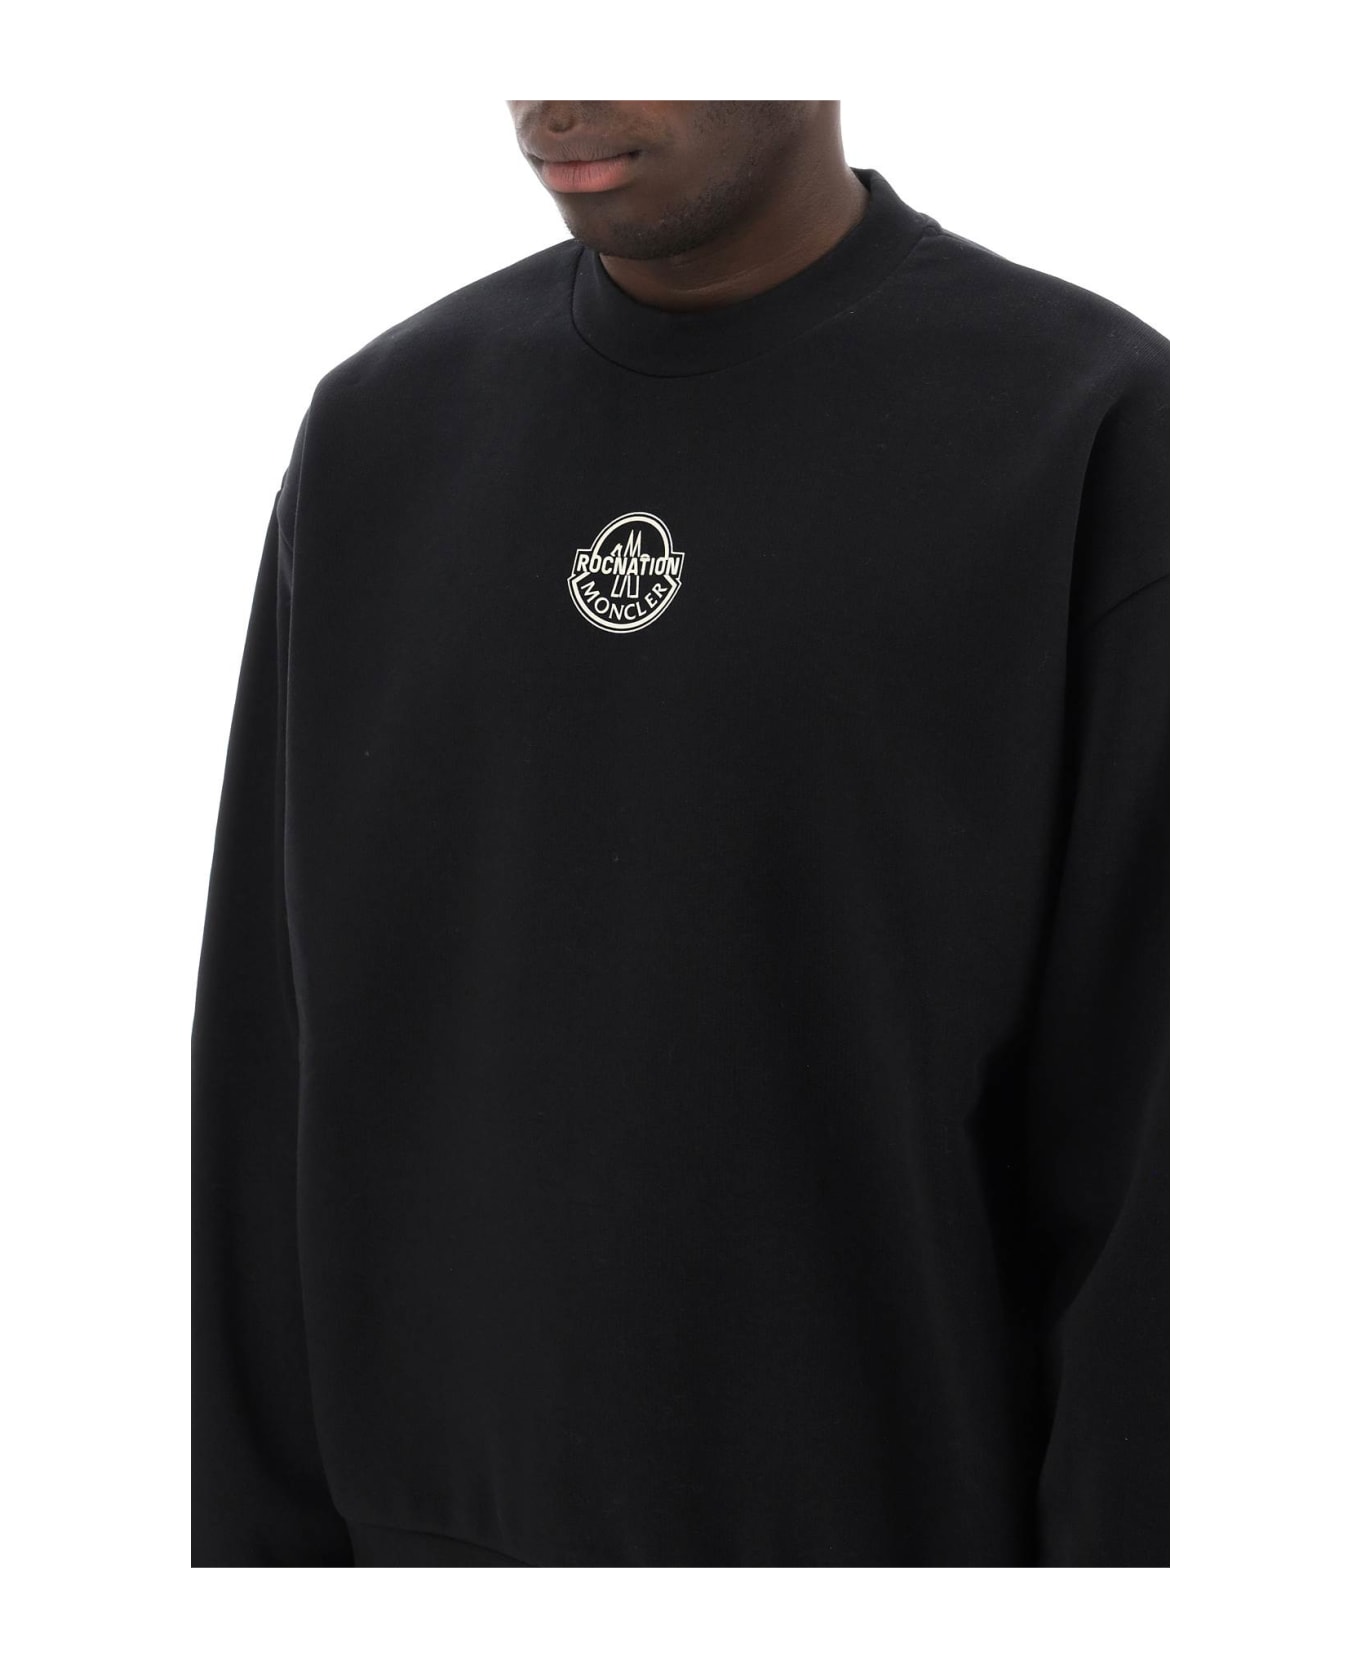 Moncler Genius Logo Sweatshirt - Black